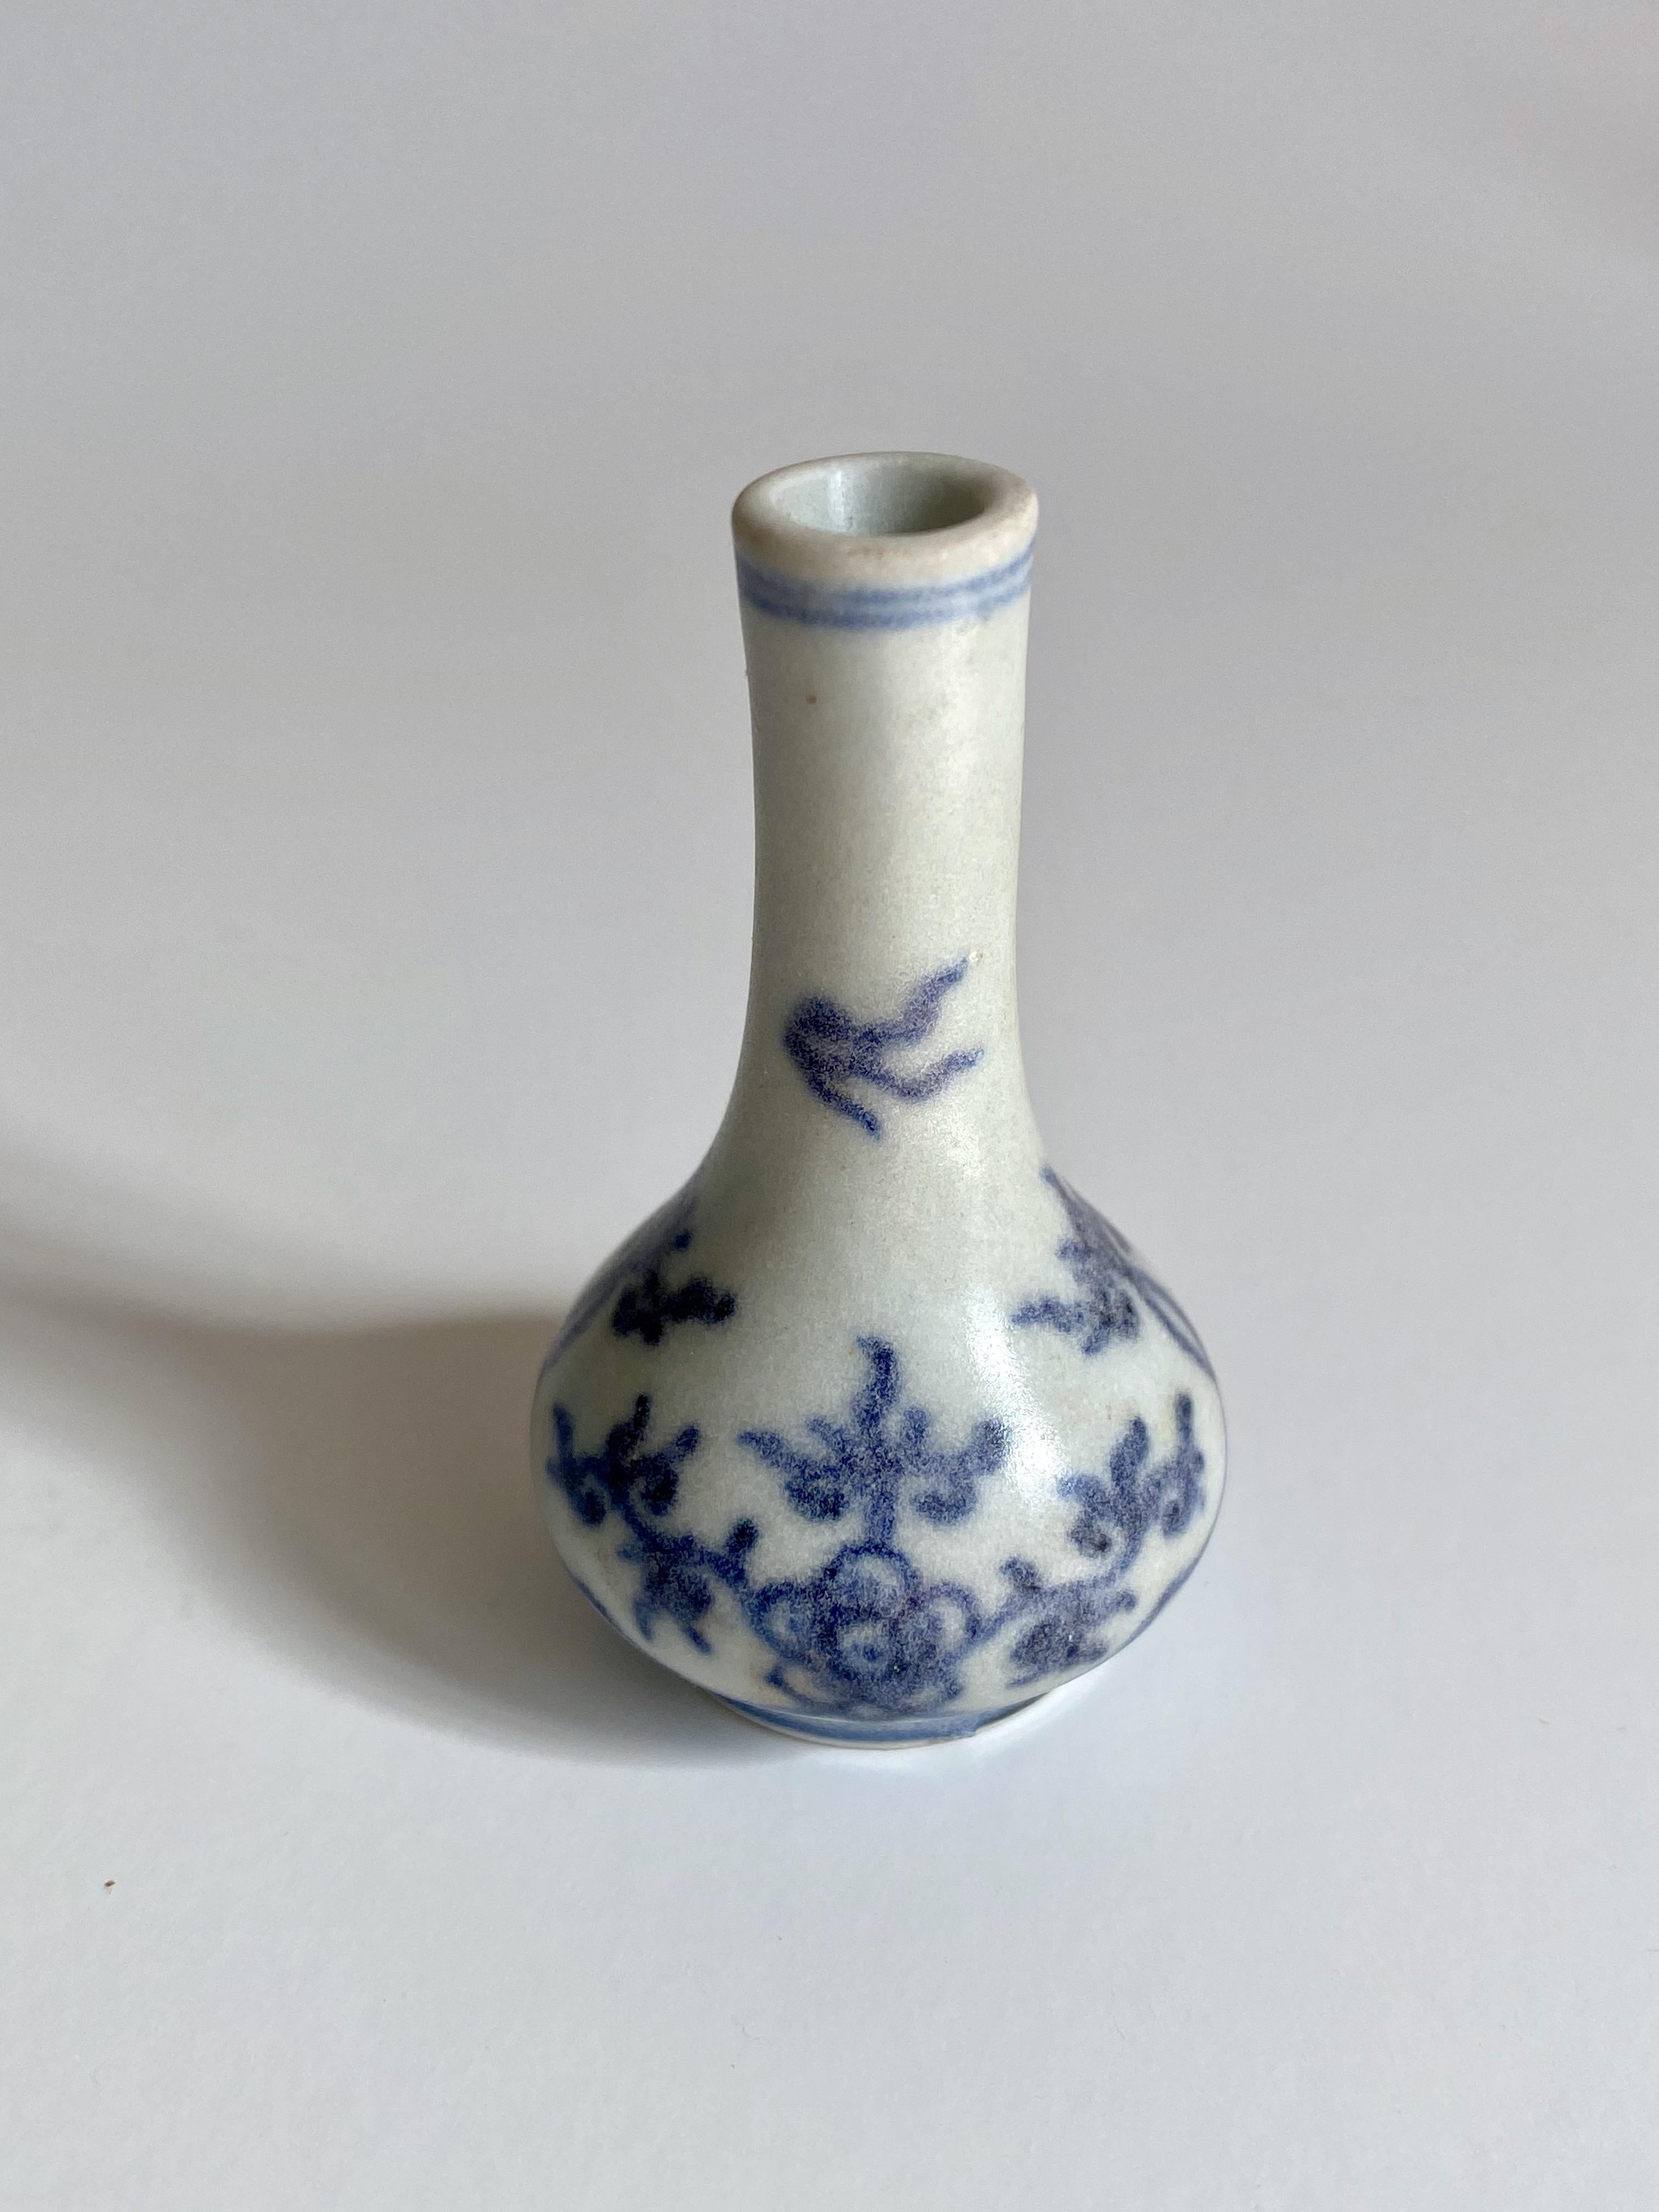 Vase miniature du XVIIe siècle en forme de poire, bleu et blanc, décoré d'oiseaux et de fleurs.
 
Ce vase miniature faisait partie d'un magot récupéré par le capitaine Michael Hatcher dans l'épave d'un navire qui a sombré dans la mer de Chine